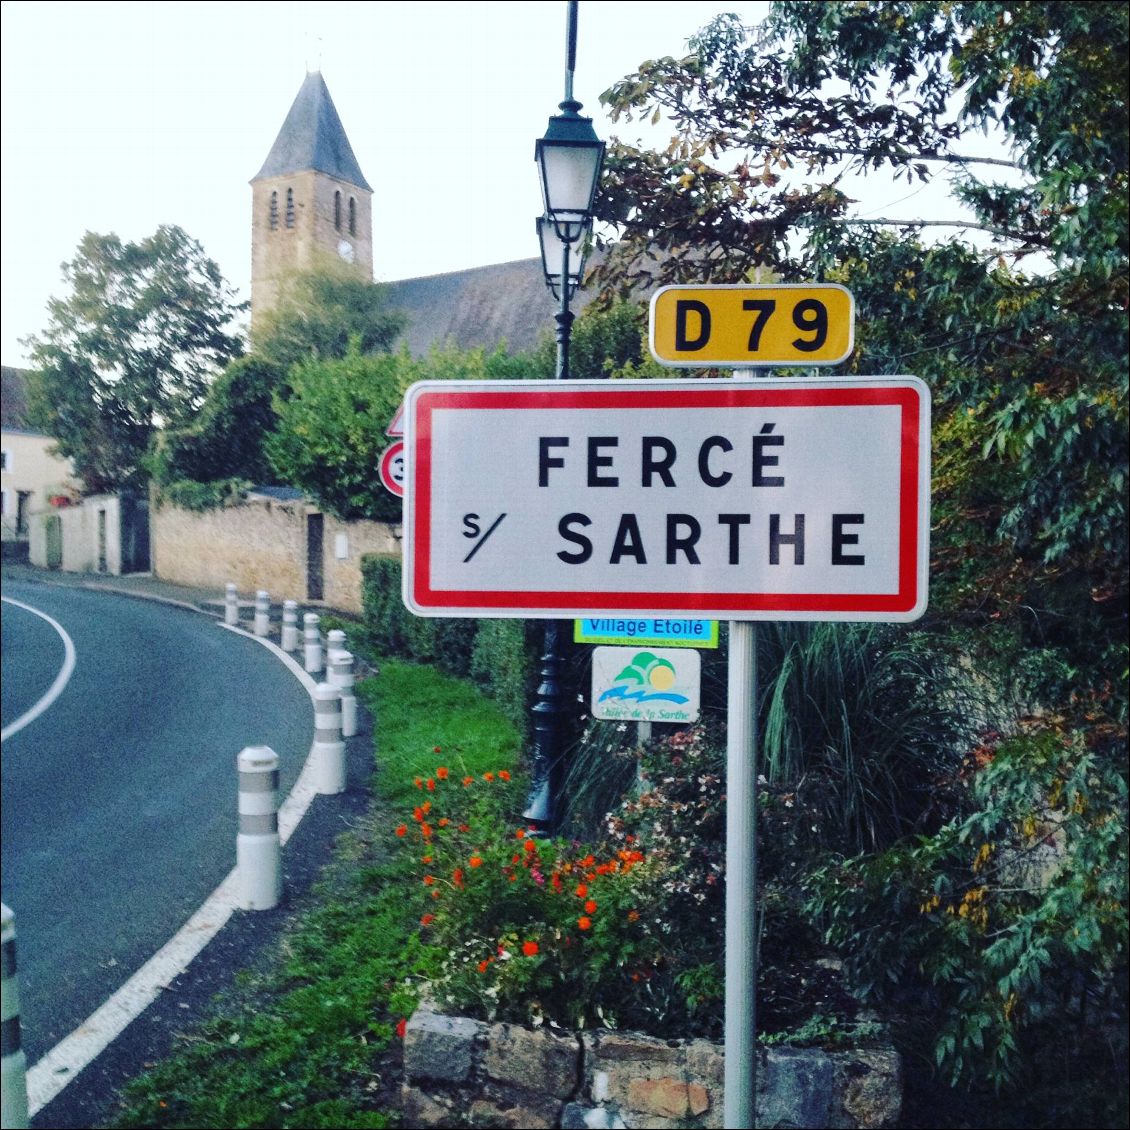 Fercé, village étoilé.